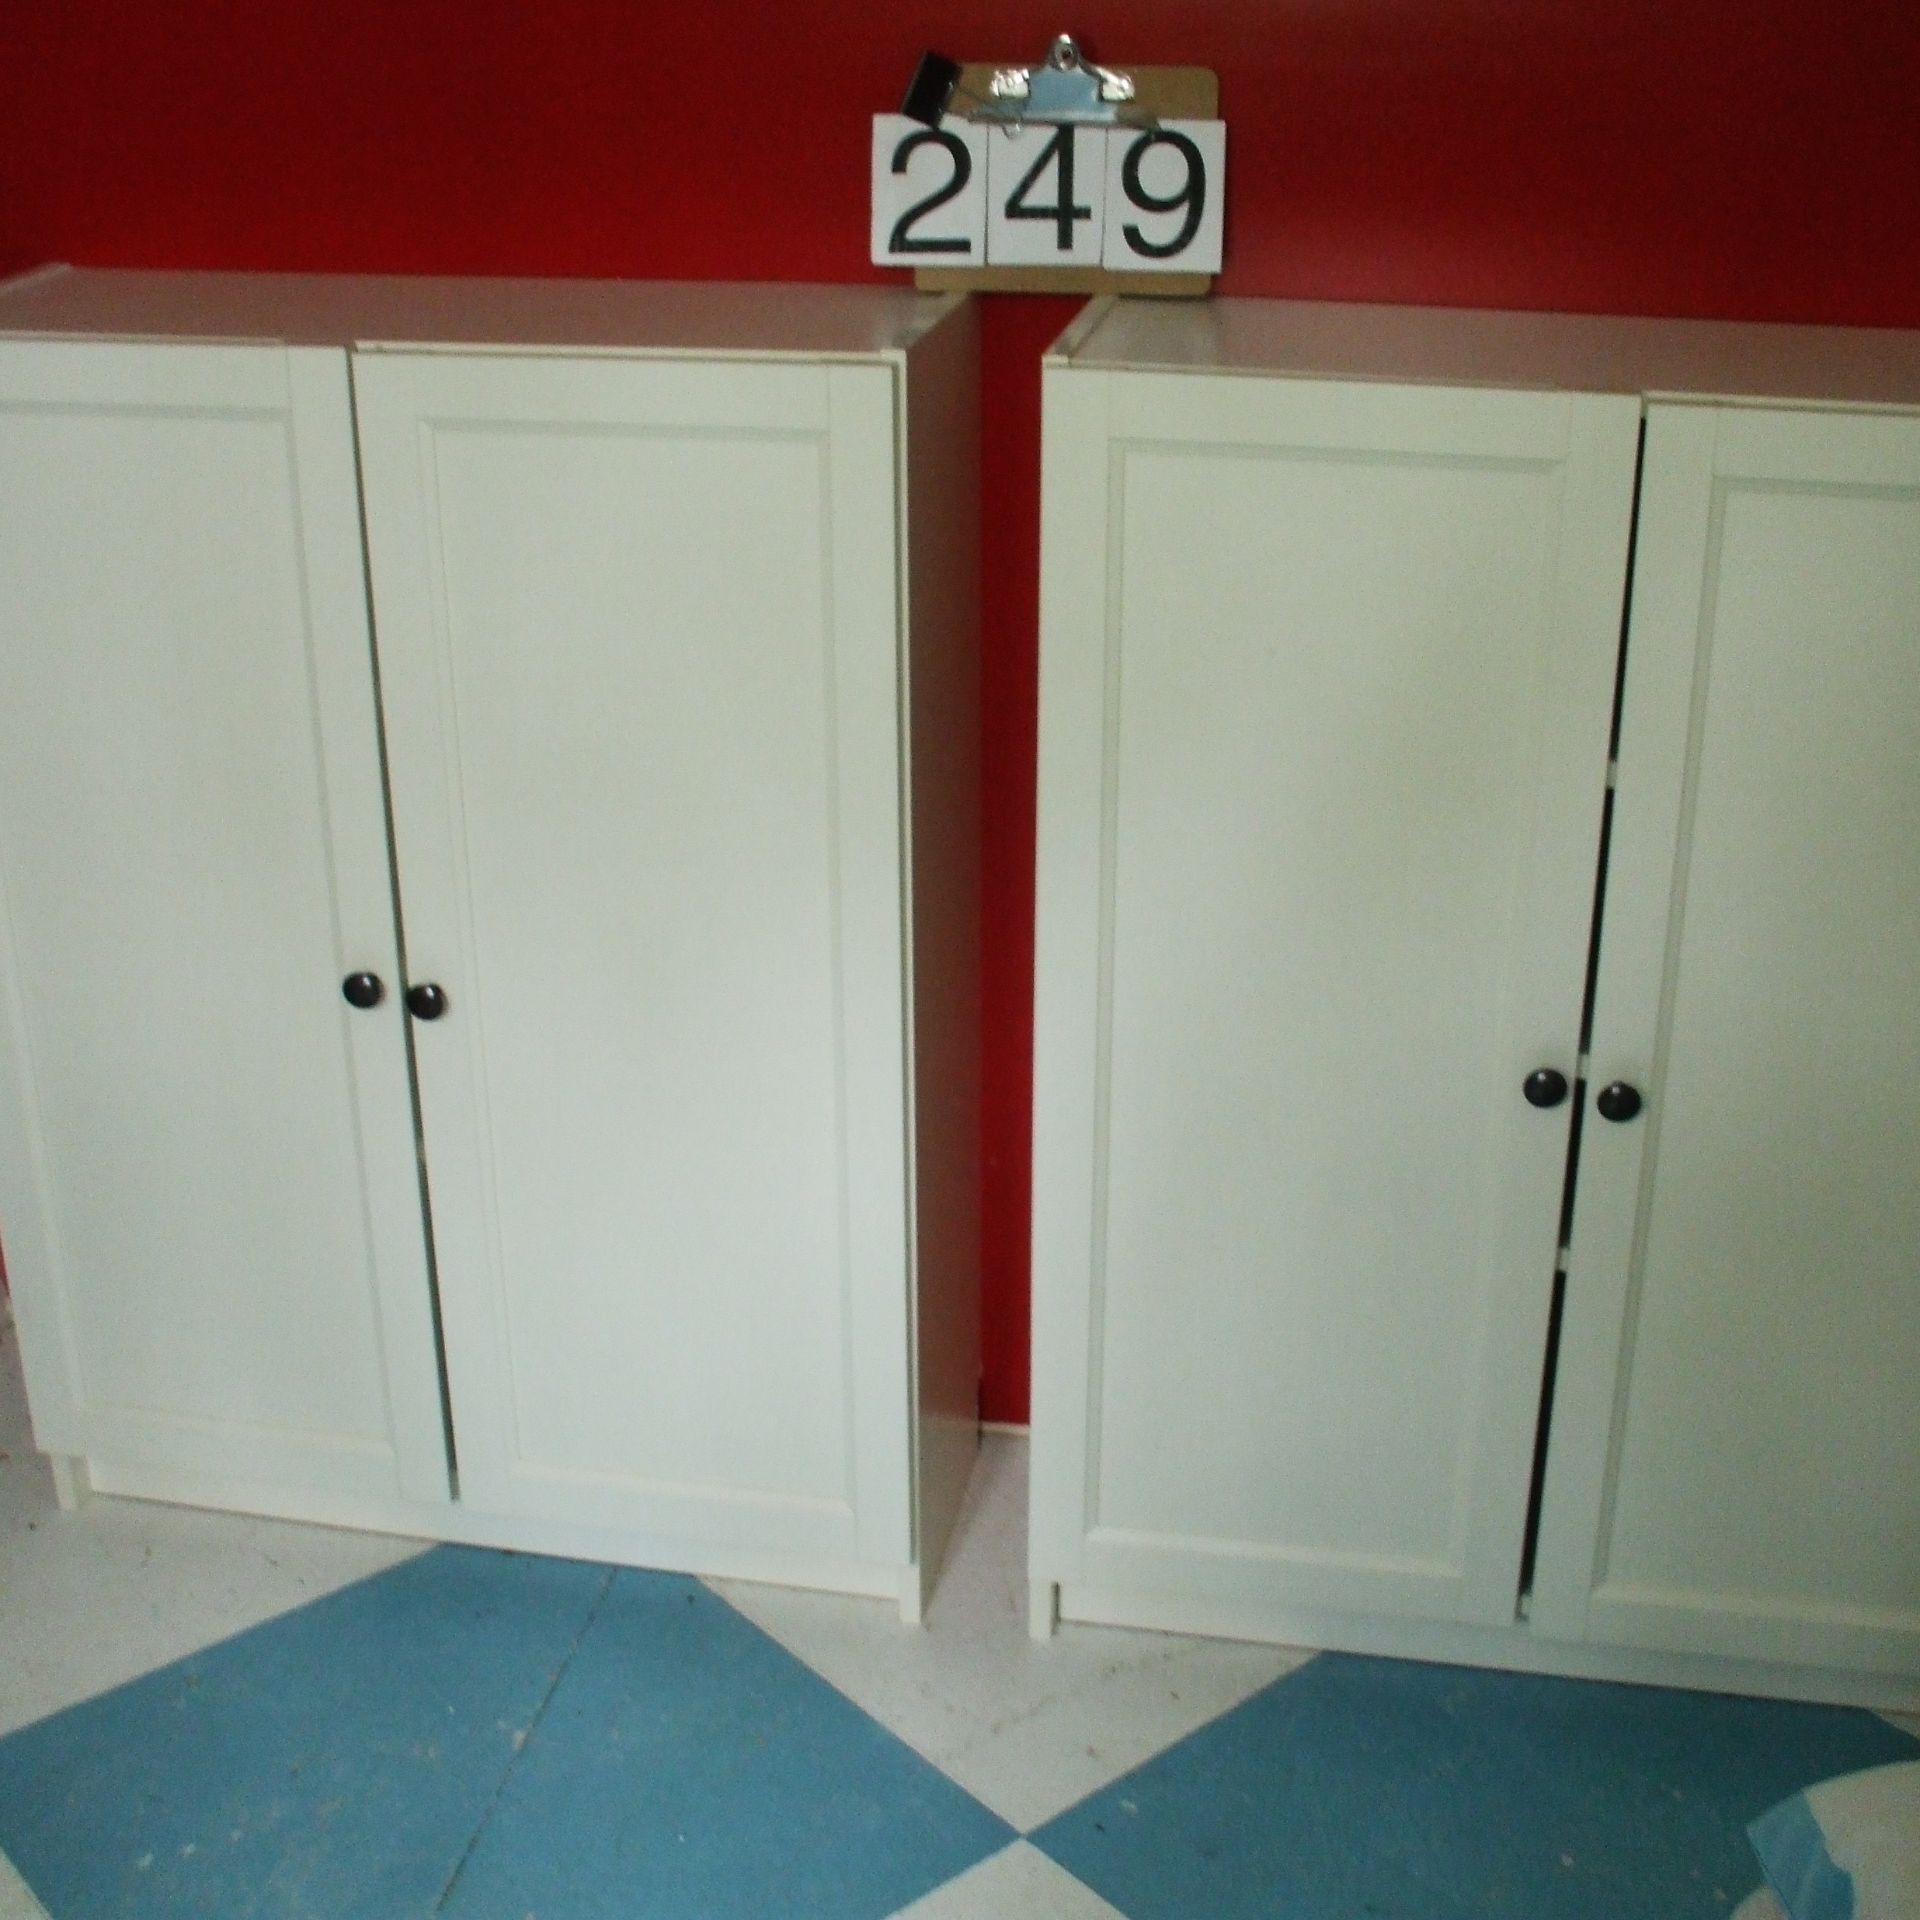 2 cabinets - 2 doors